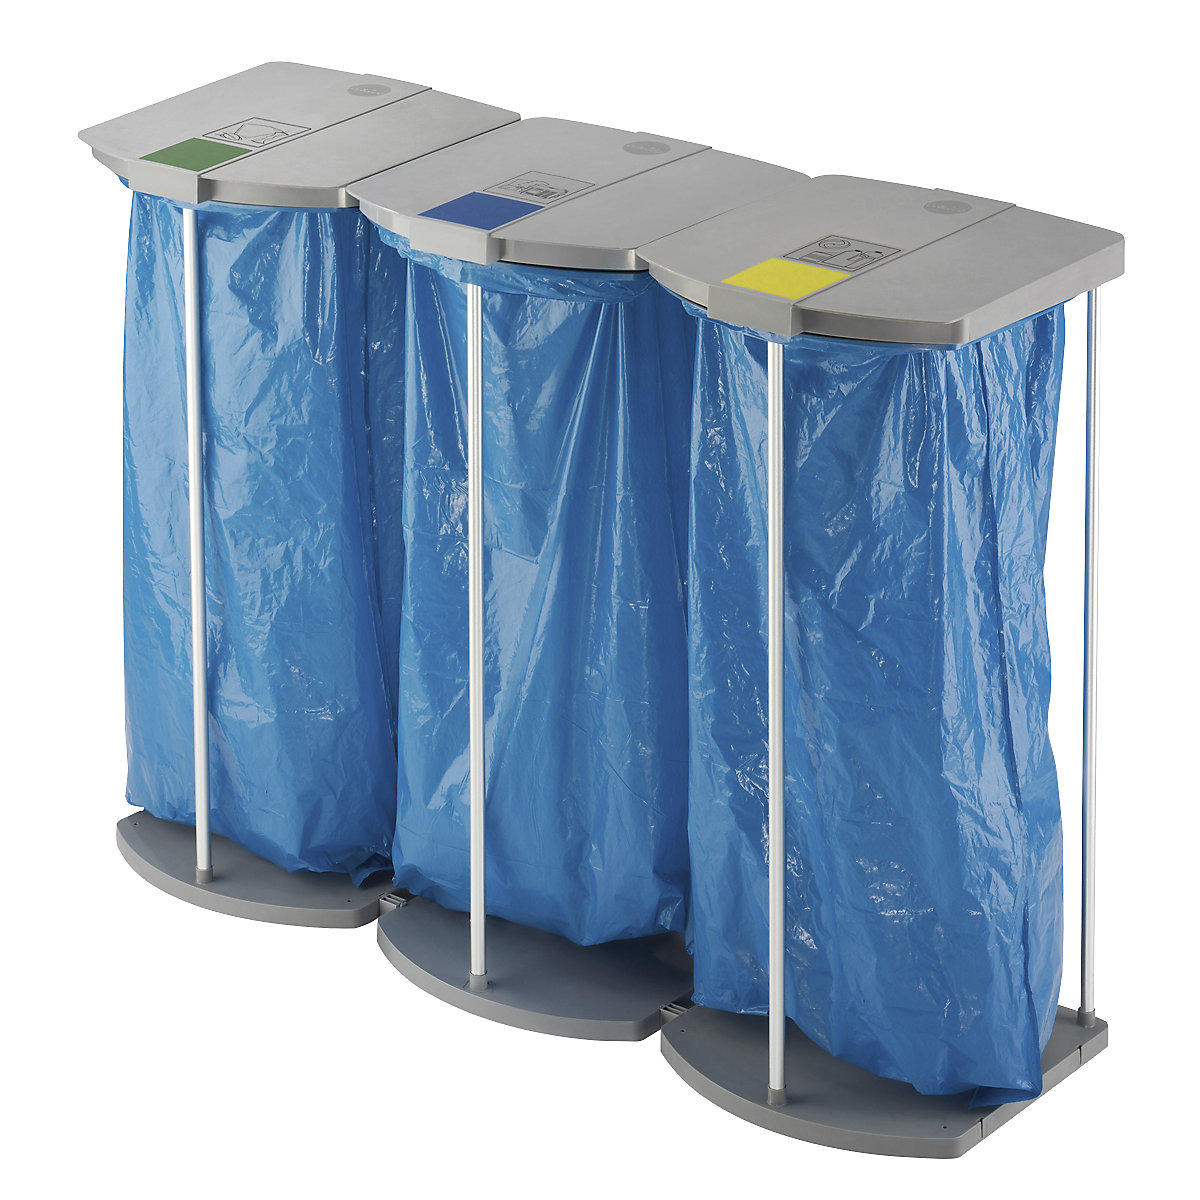 Stojan pro pytle na odpad s 250 modrými pytli na tříděný odpad - Hailo